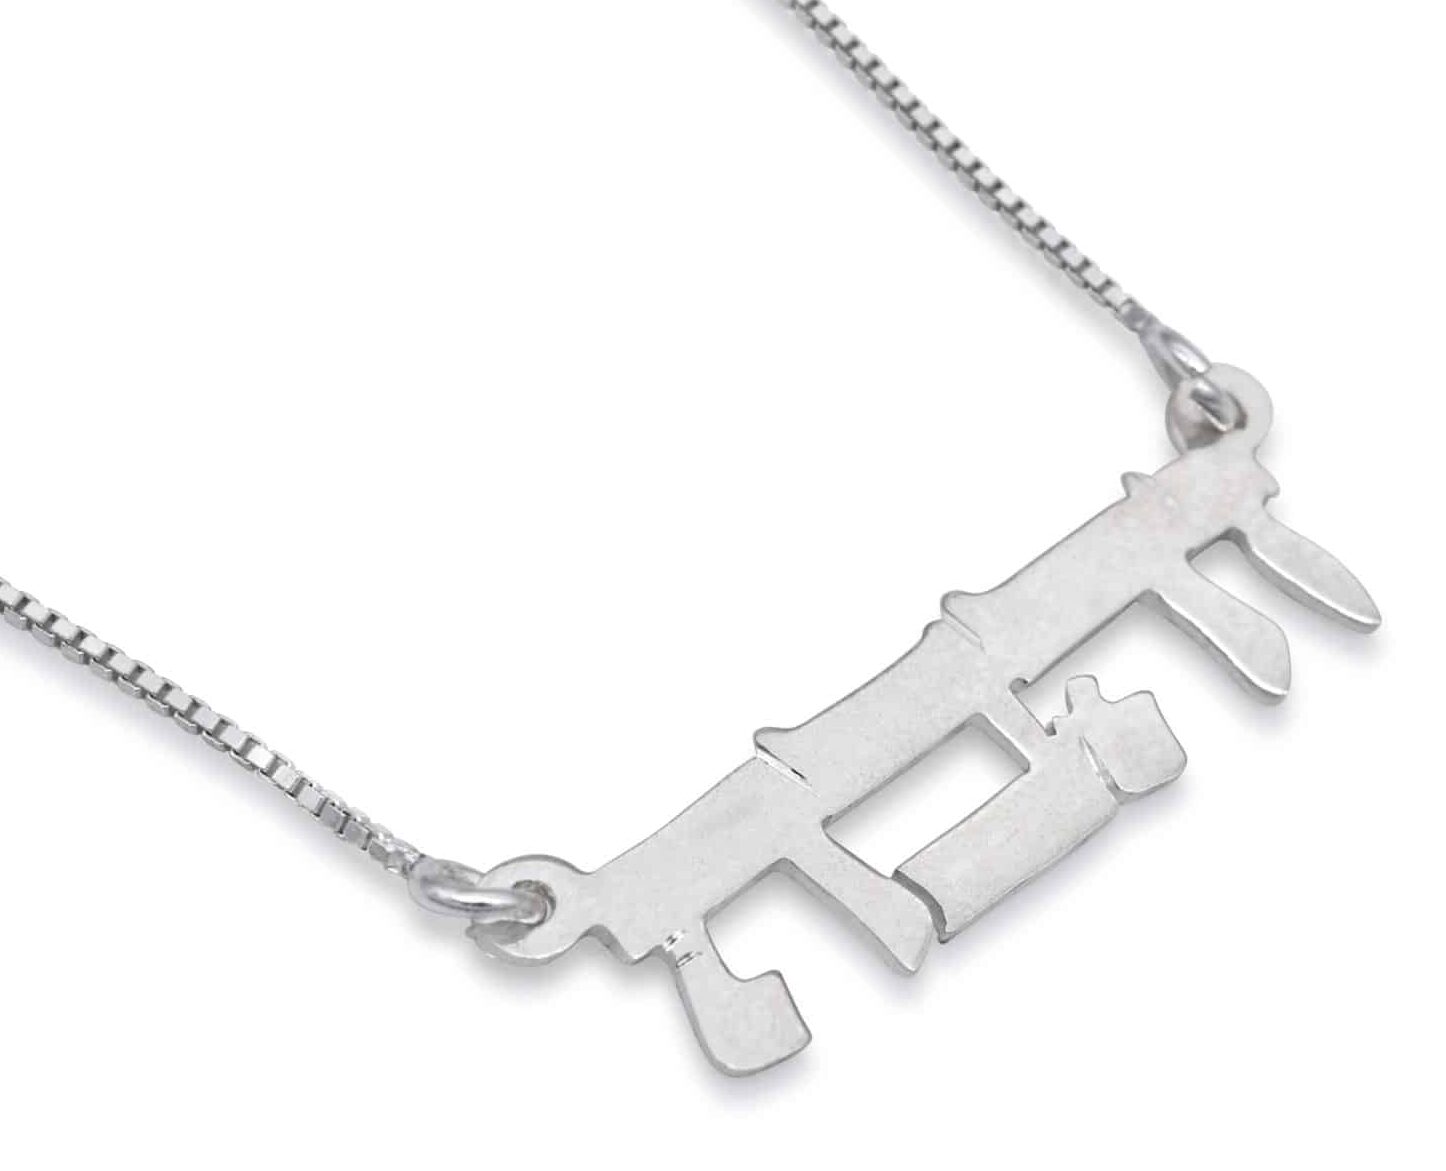 Hebrew Unique Silver Name Necklace